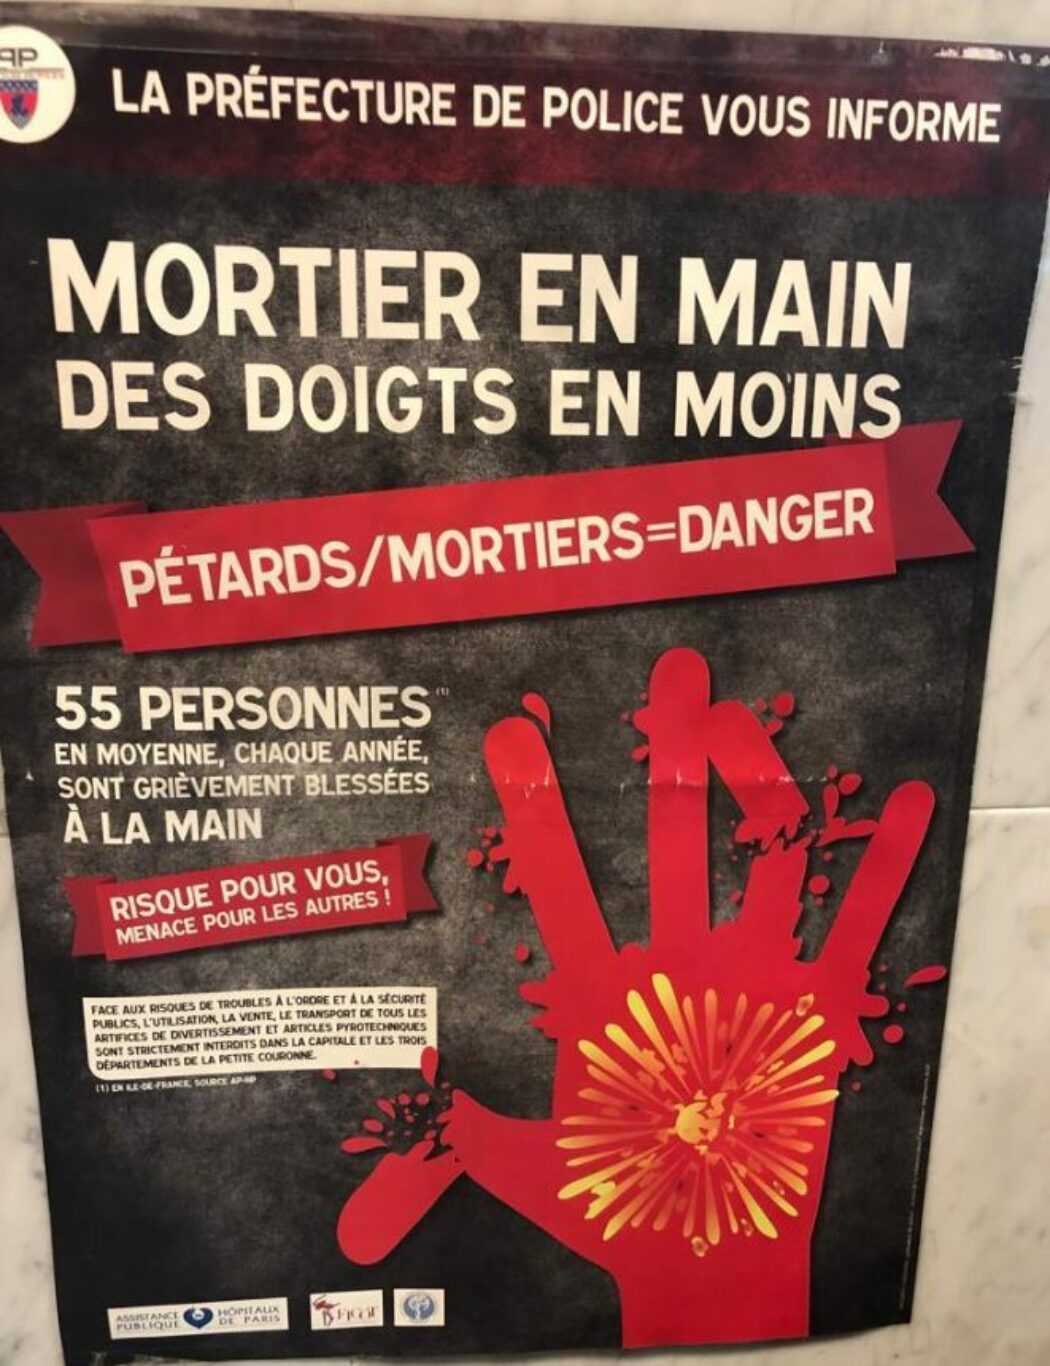 Pétards/Mortiers = danger